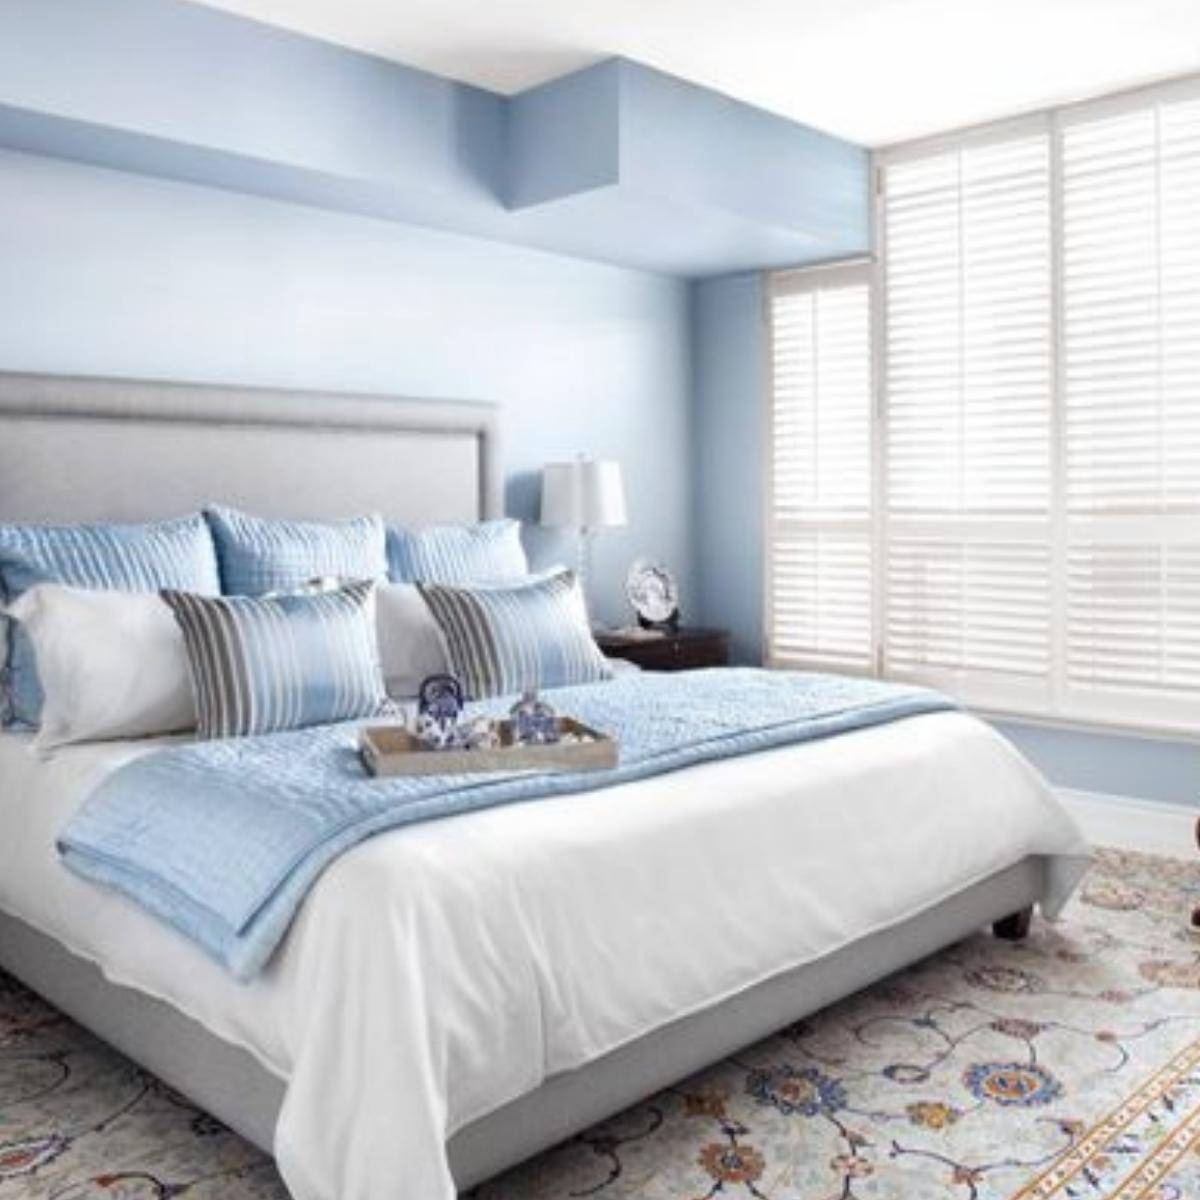 promeed light blue bedding